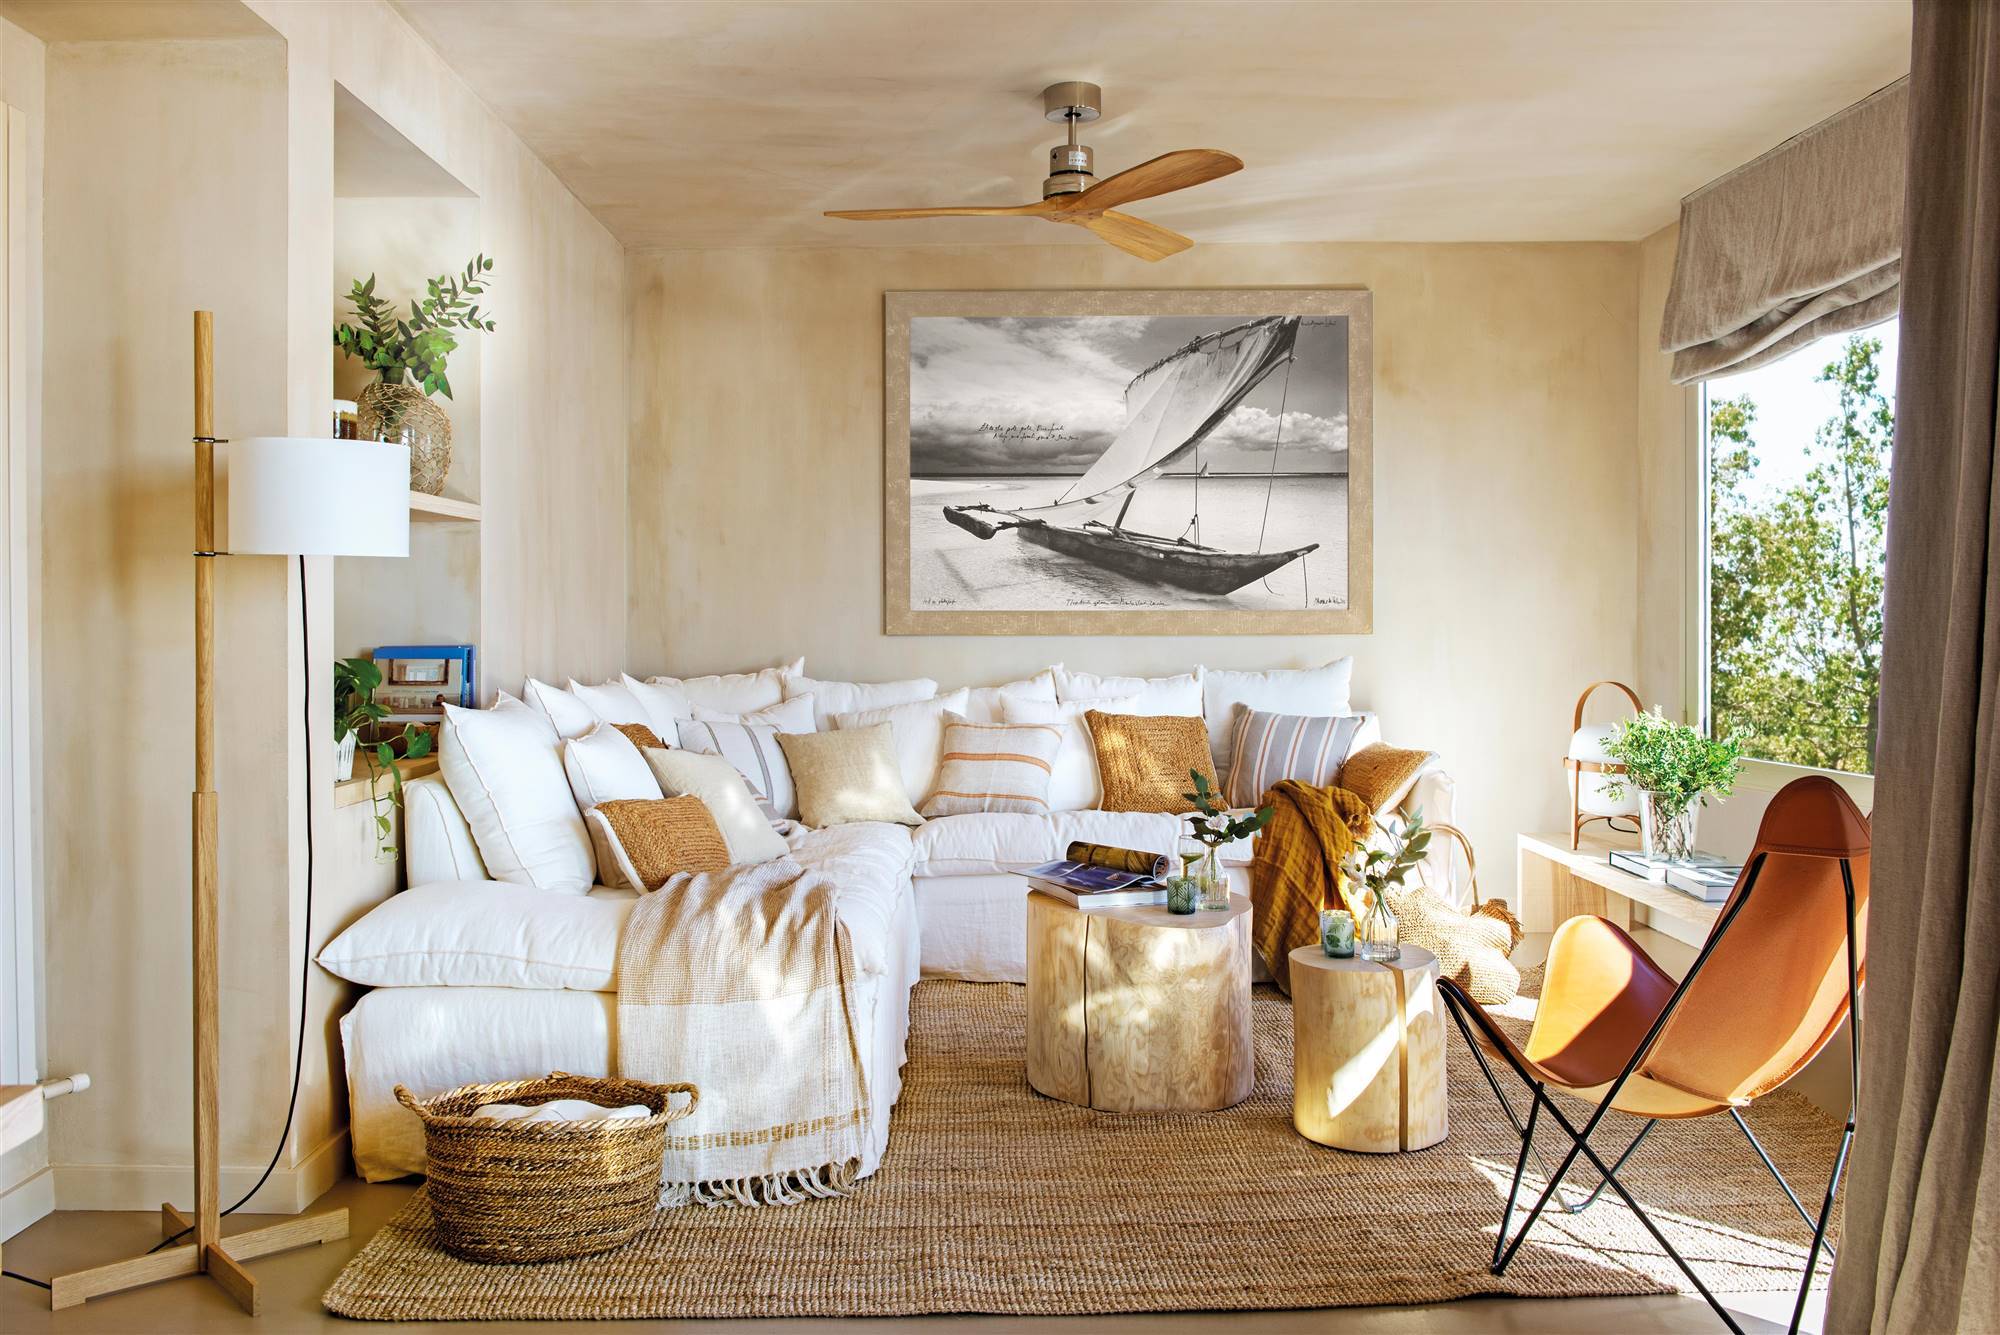 Salón pequeño con paredes en beige, sofá rinconero, butaca y cuadro.